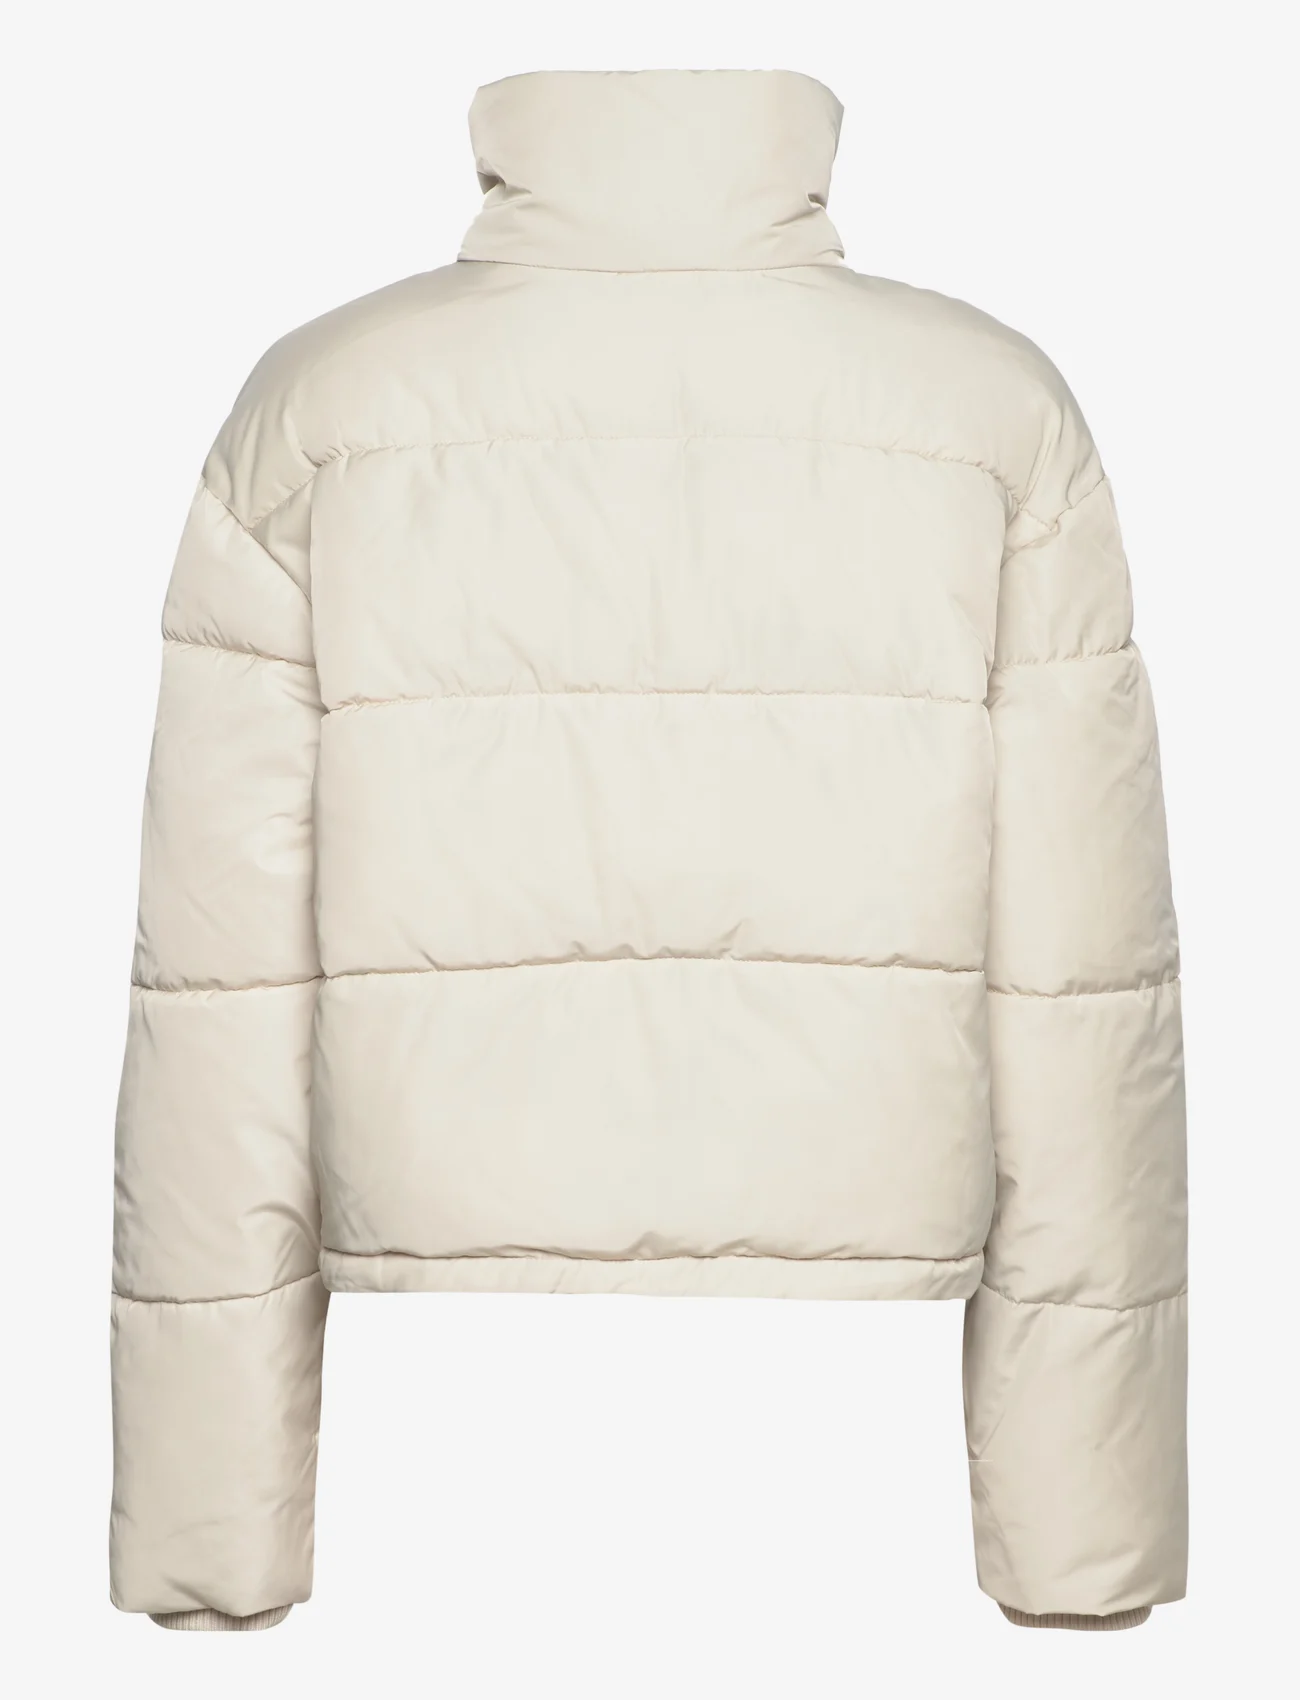 Coster Copenhagen - Short puffer jacket - winter jackets - light cream - 1